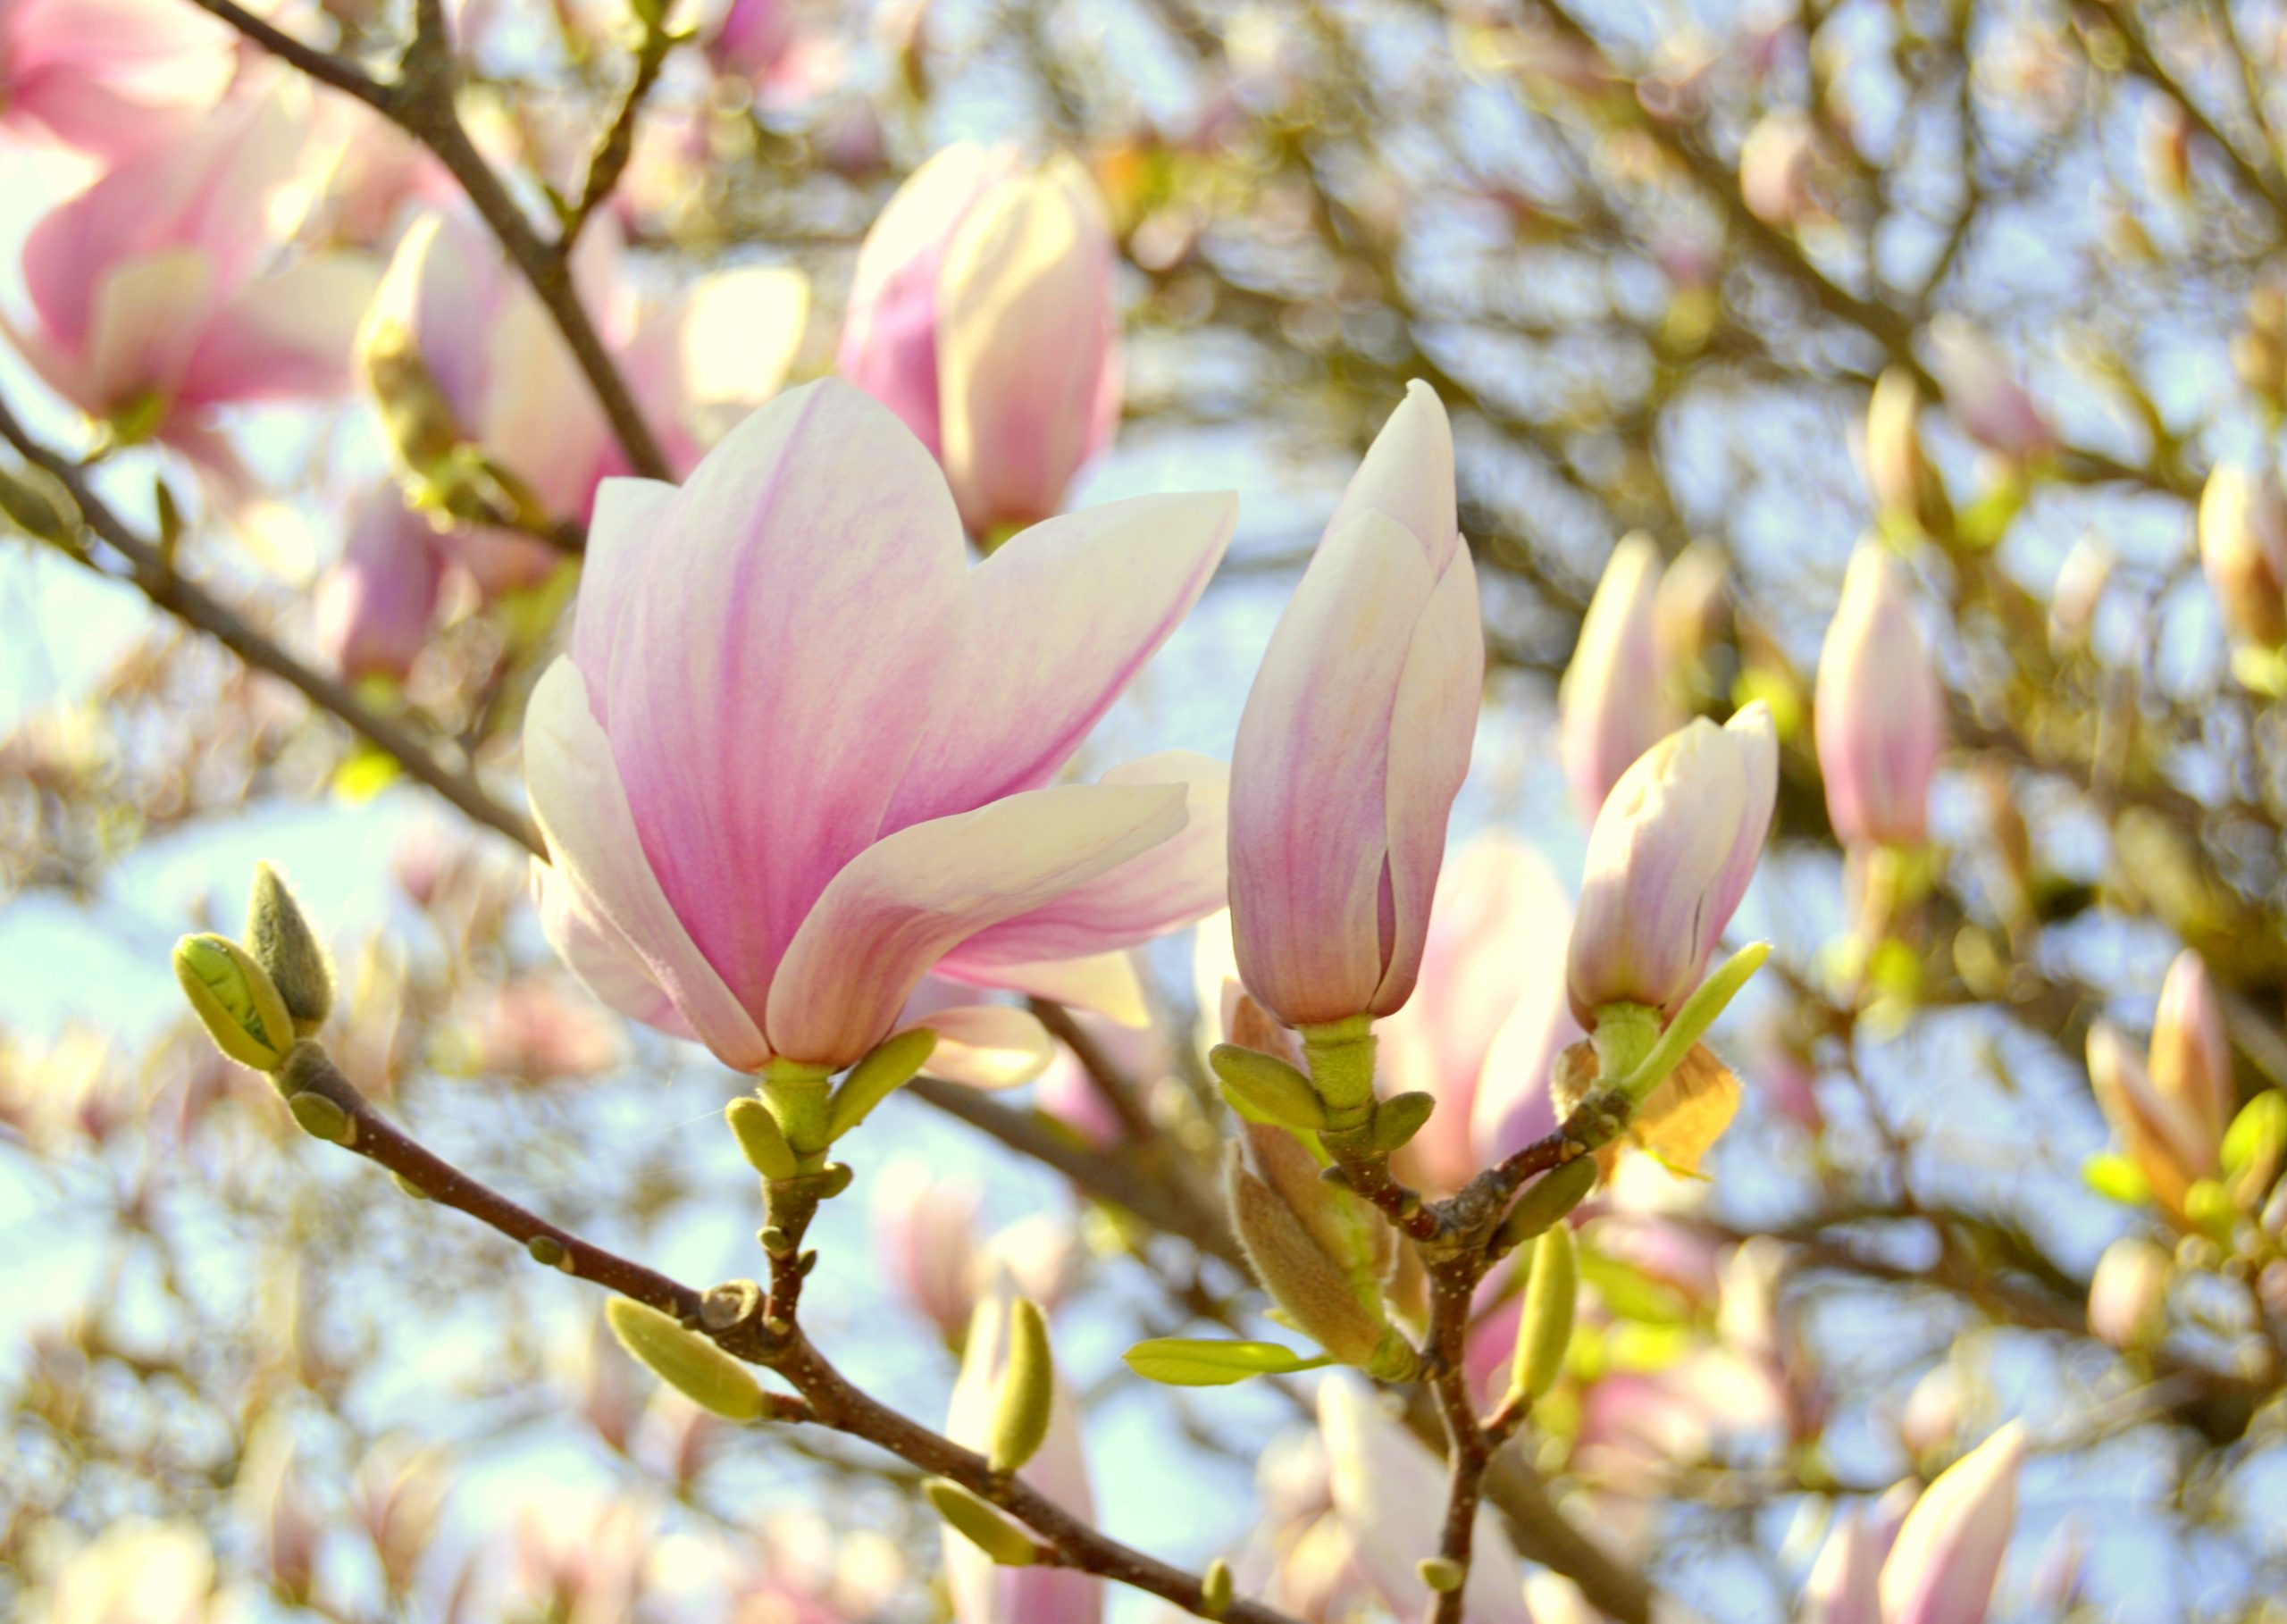 Magnolia tree in bloom in spring